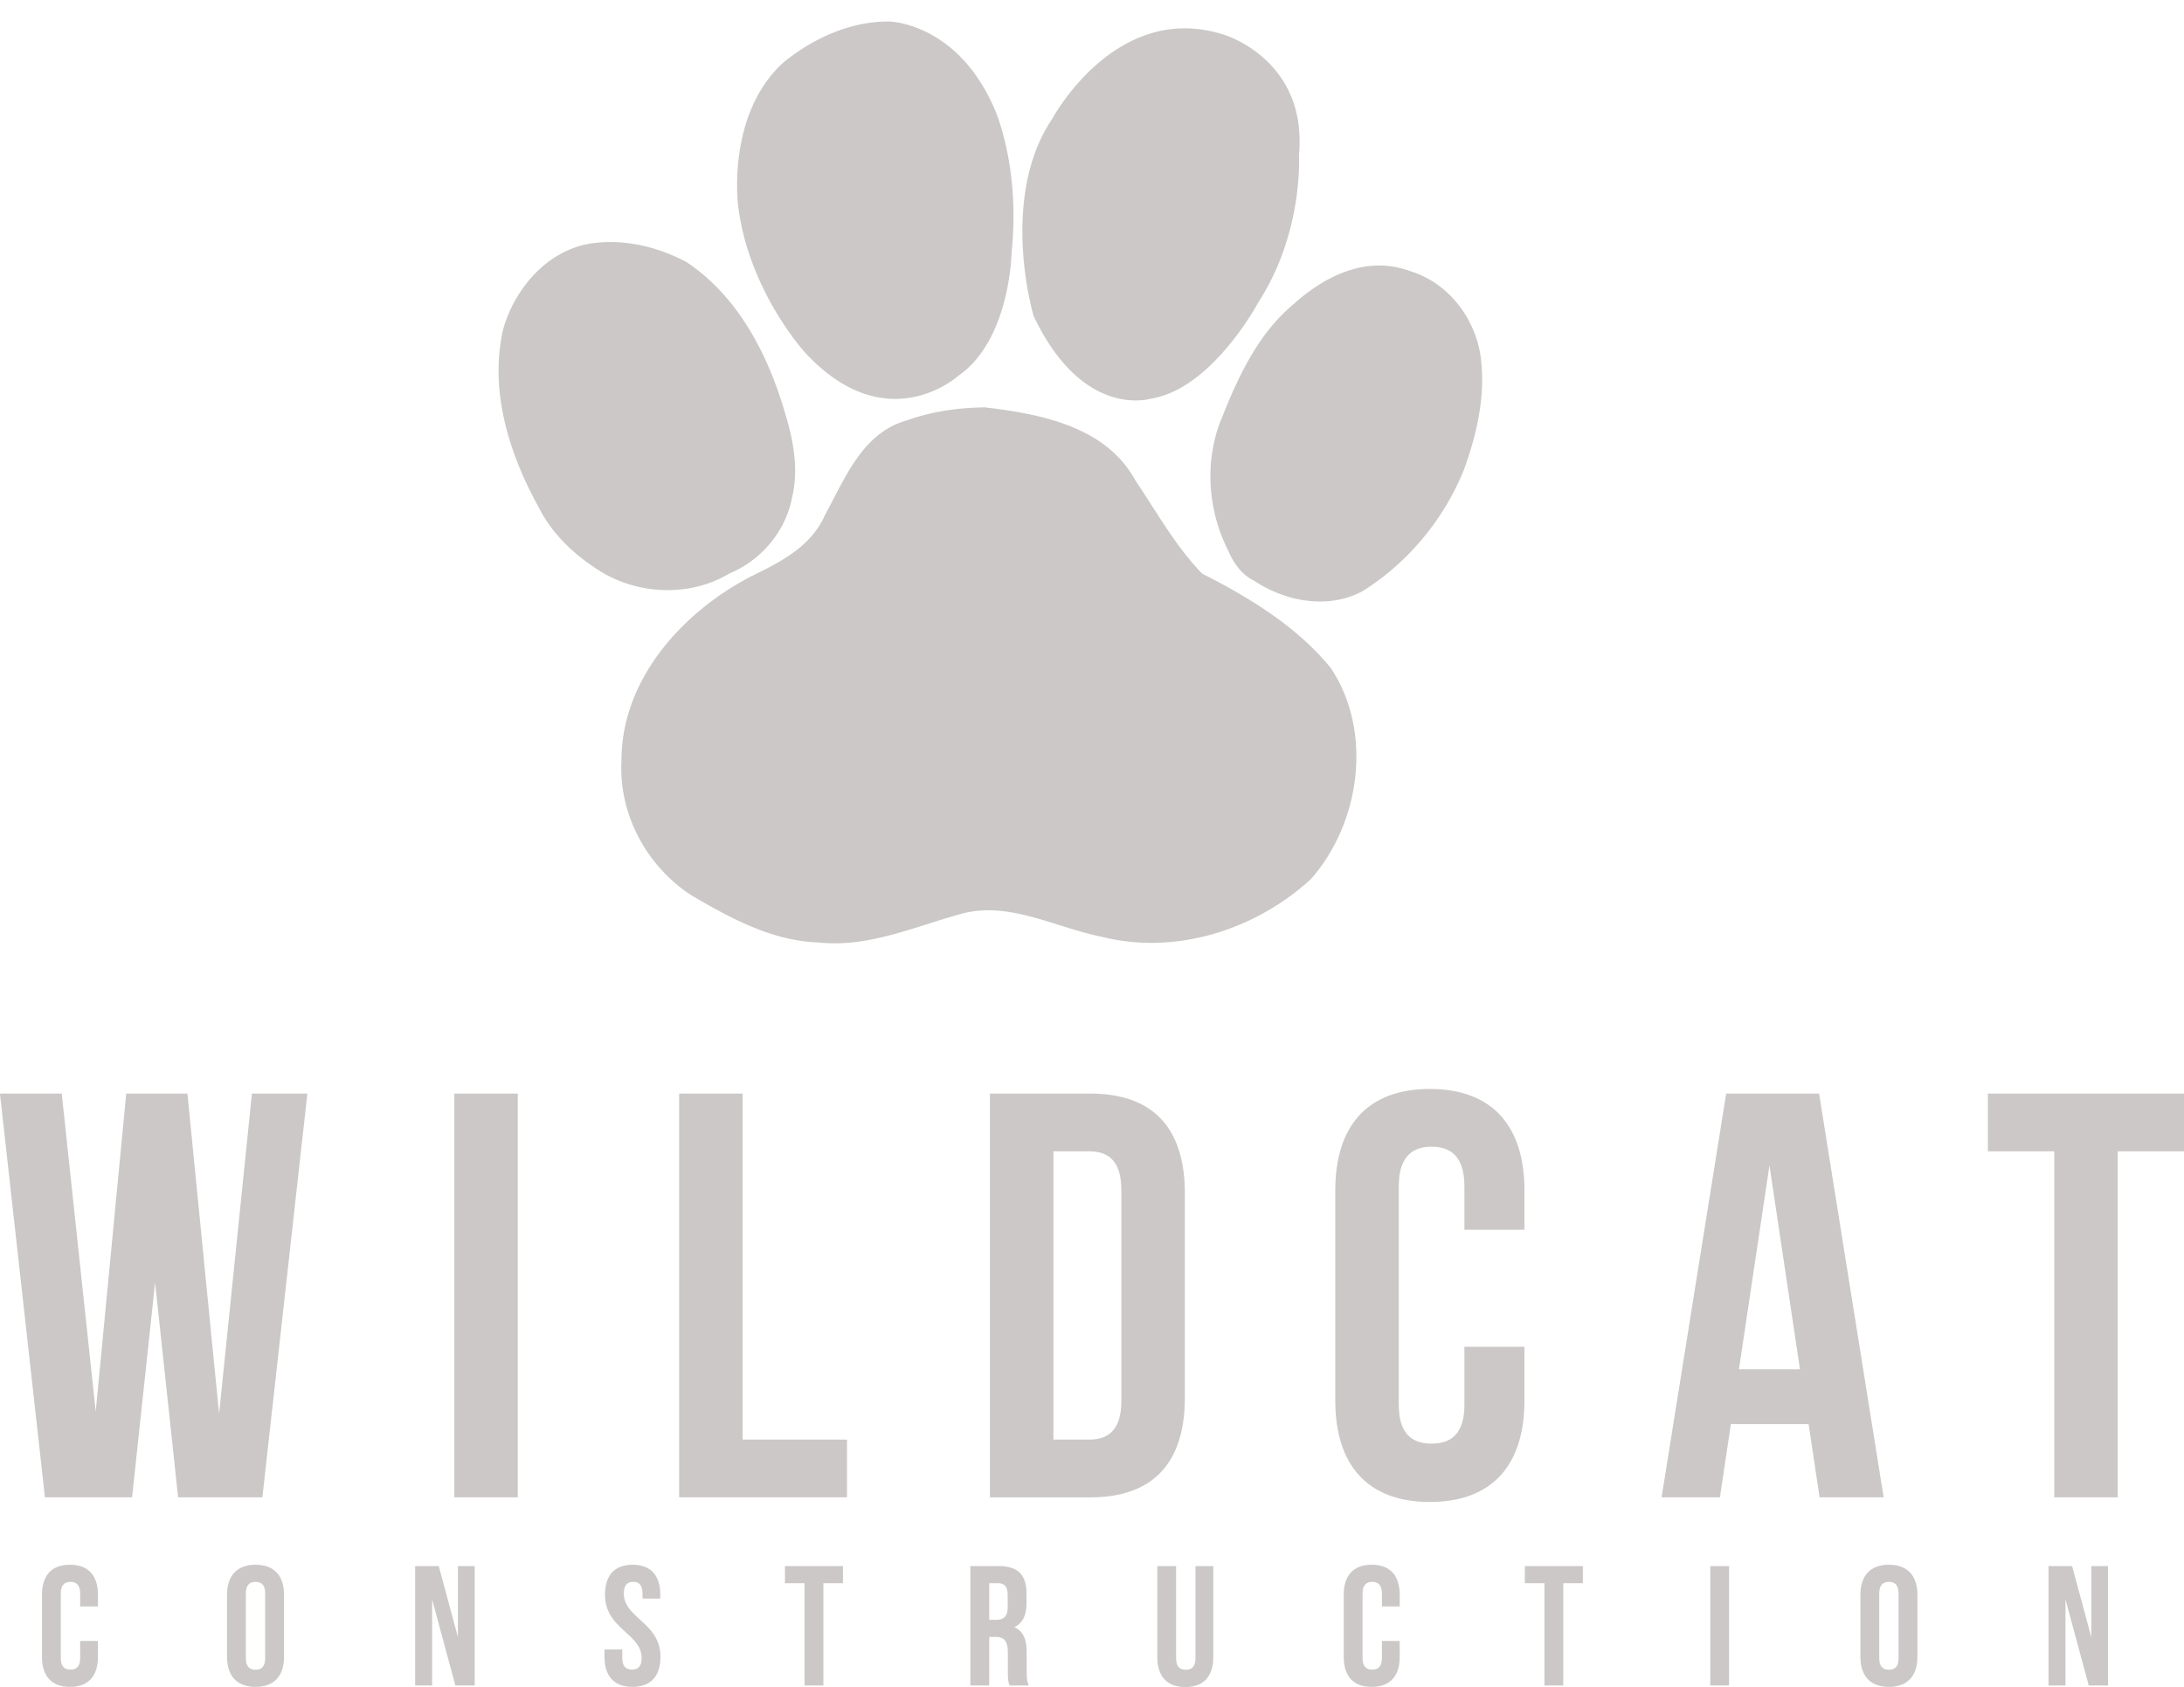 Wildcat Construction